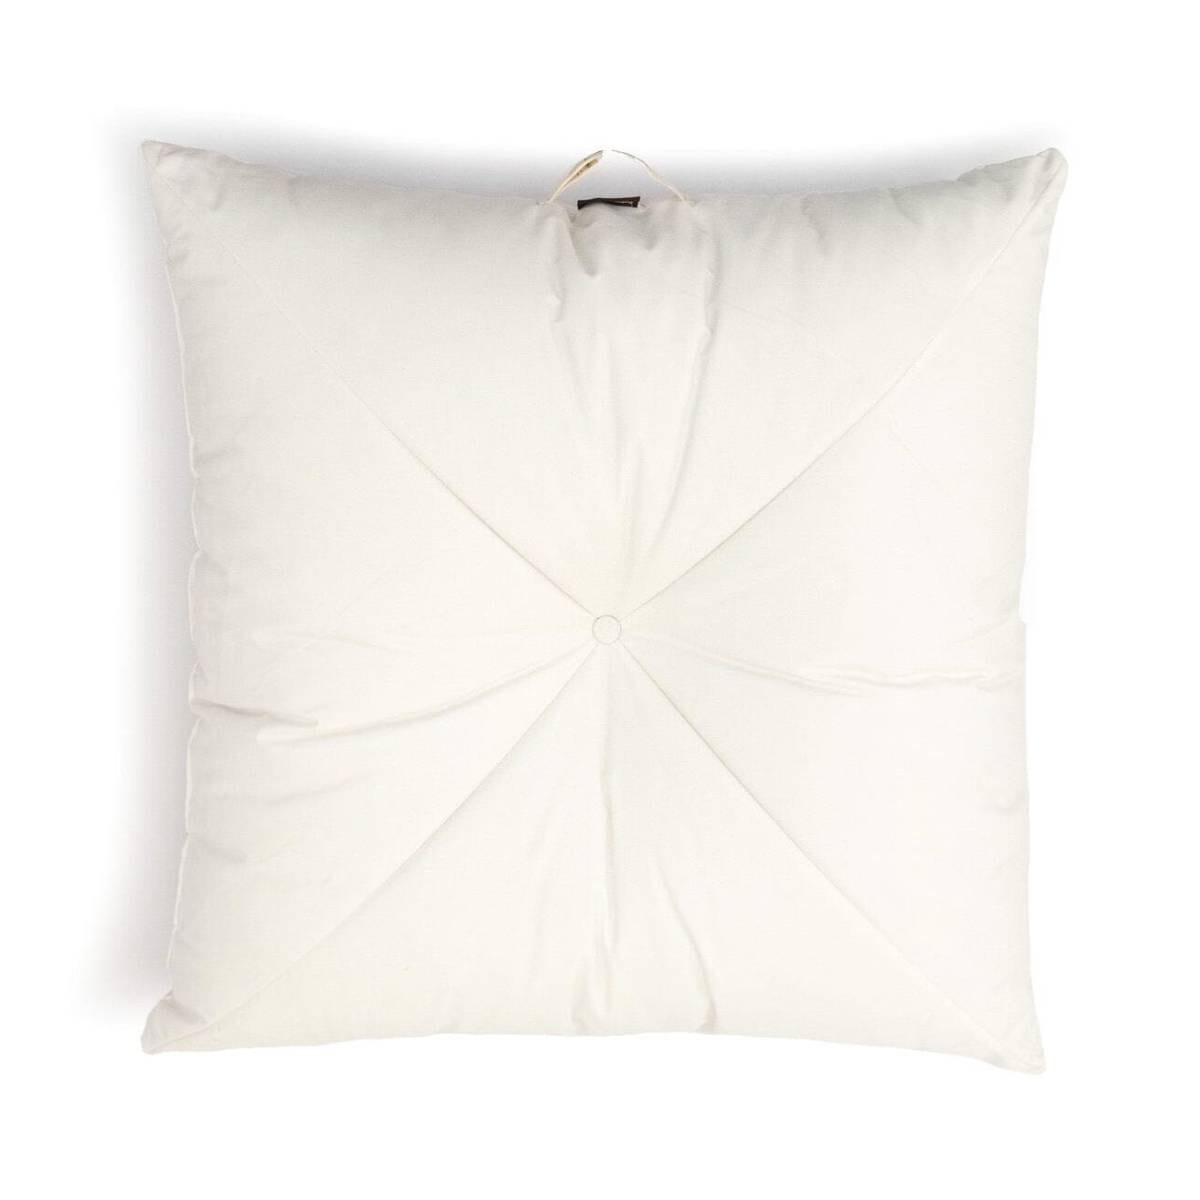 The Floor Pillow - Antique White Floor Pillow Business & Pleasure Co Aus 